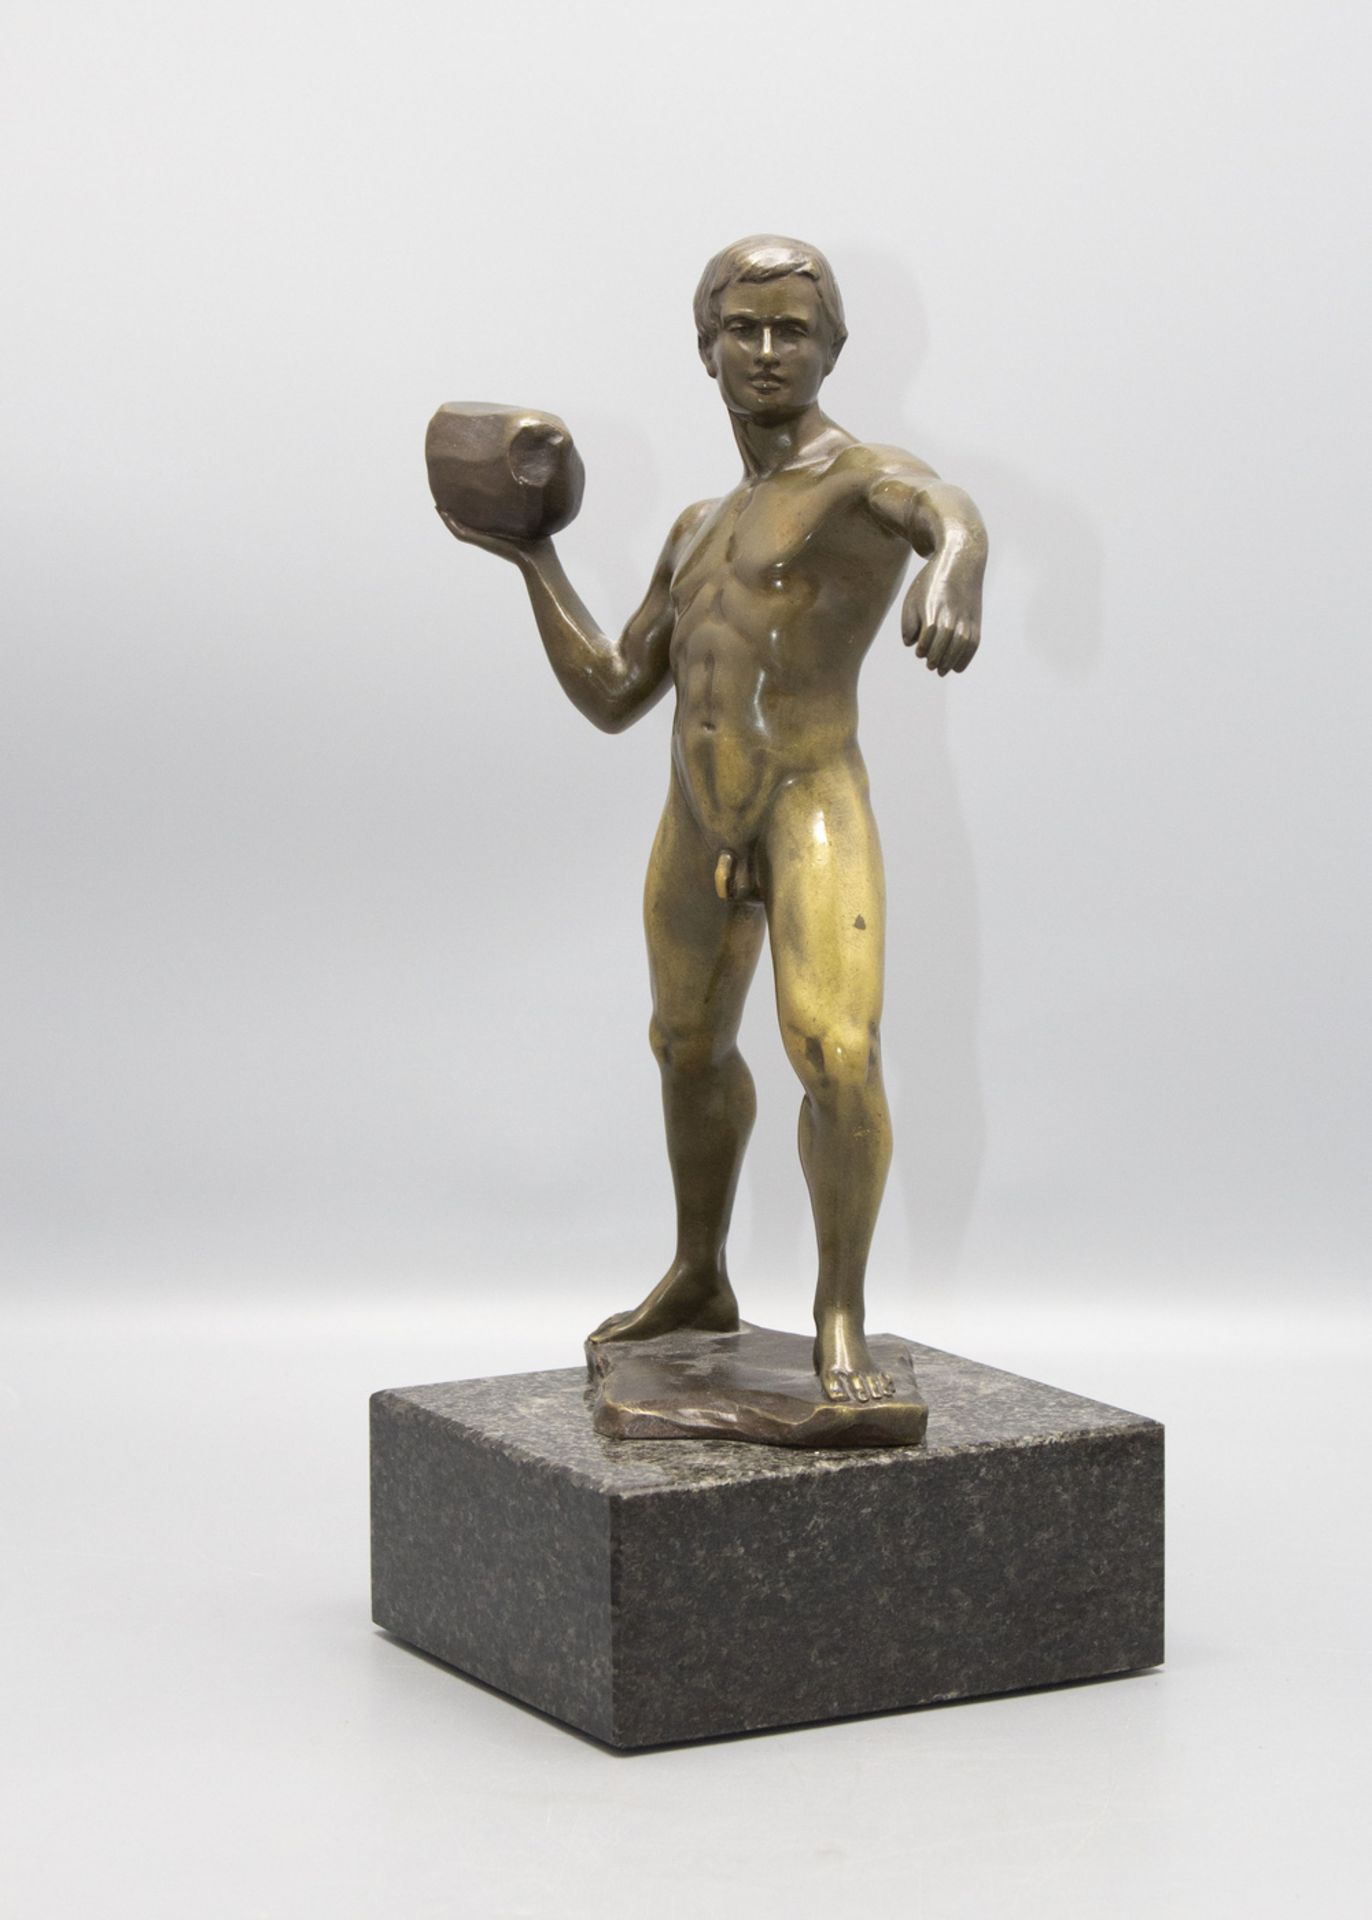 Hans KECK (1875-1941), Bronzefigur 'Der Steinwerfer' / a bronze figure 'The stone thrower', um 1925